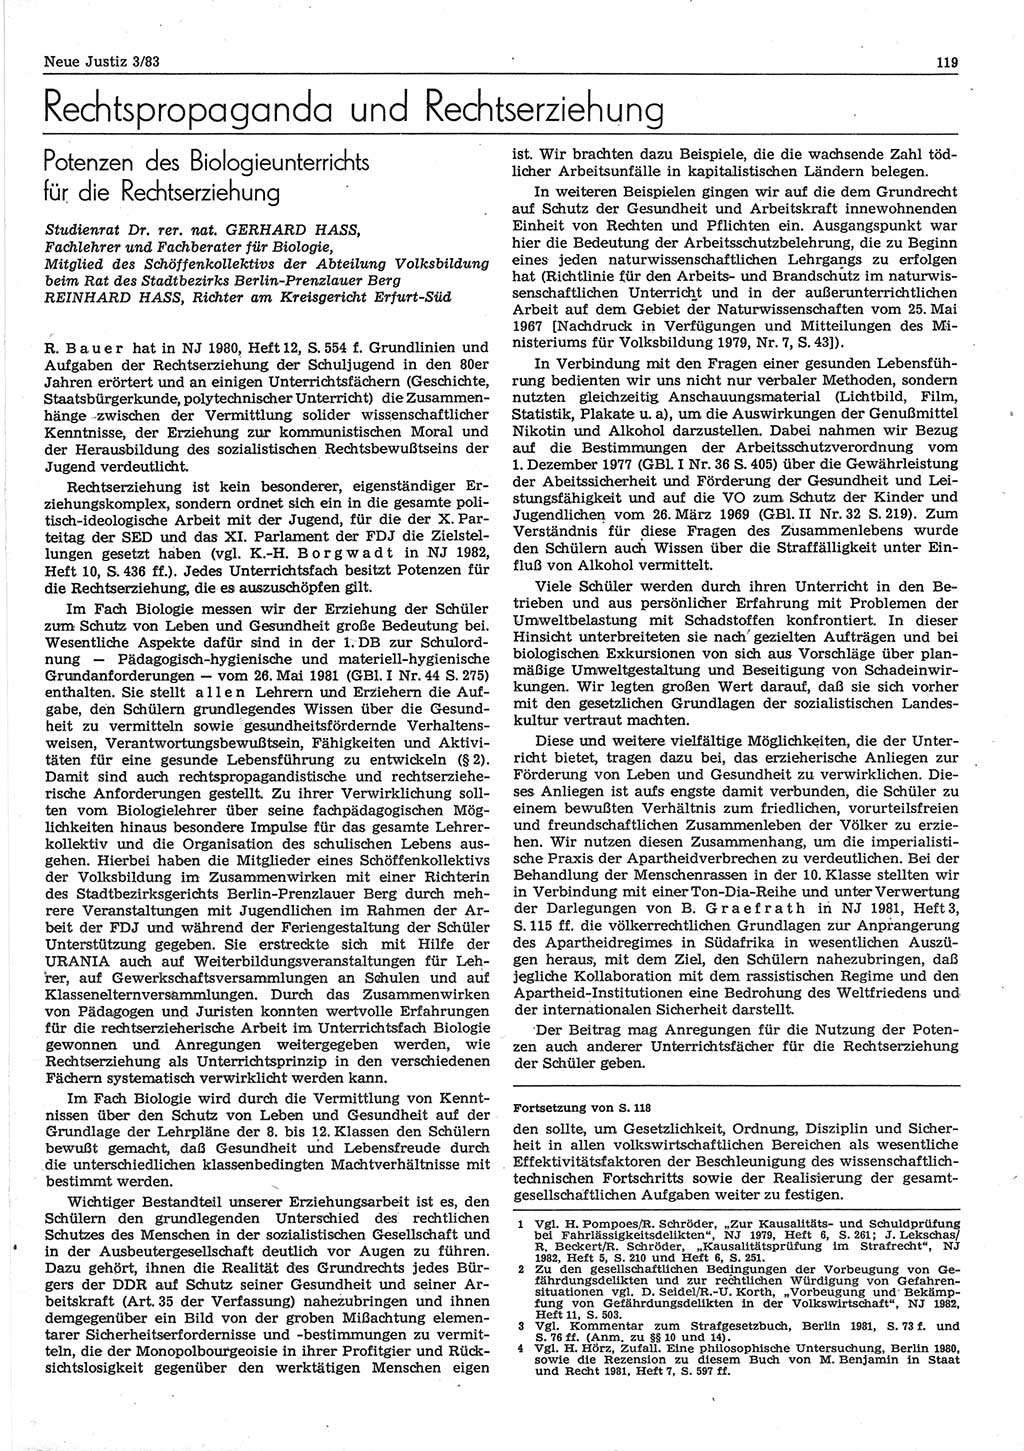 Neue Justiz (NJ), Zeitschrift für sozialistisches Recht und Gesetzlichkeit [Deutsche Demokratische Republik (DDR)], 37. Jahrgang 1983, Seite 119 (NJ DDR 1983, S. 119)